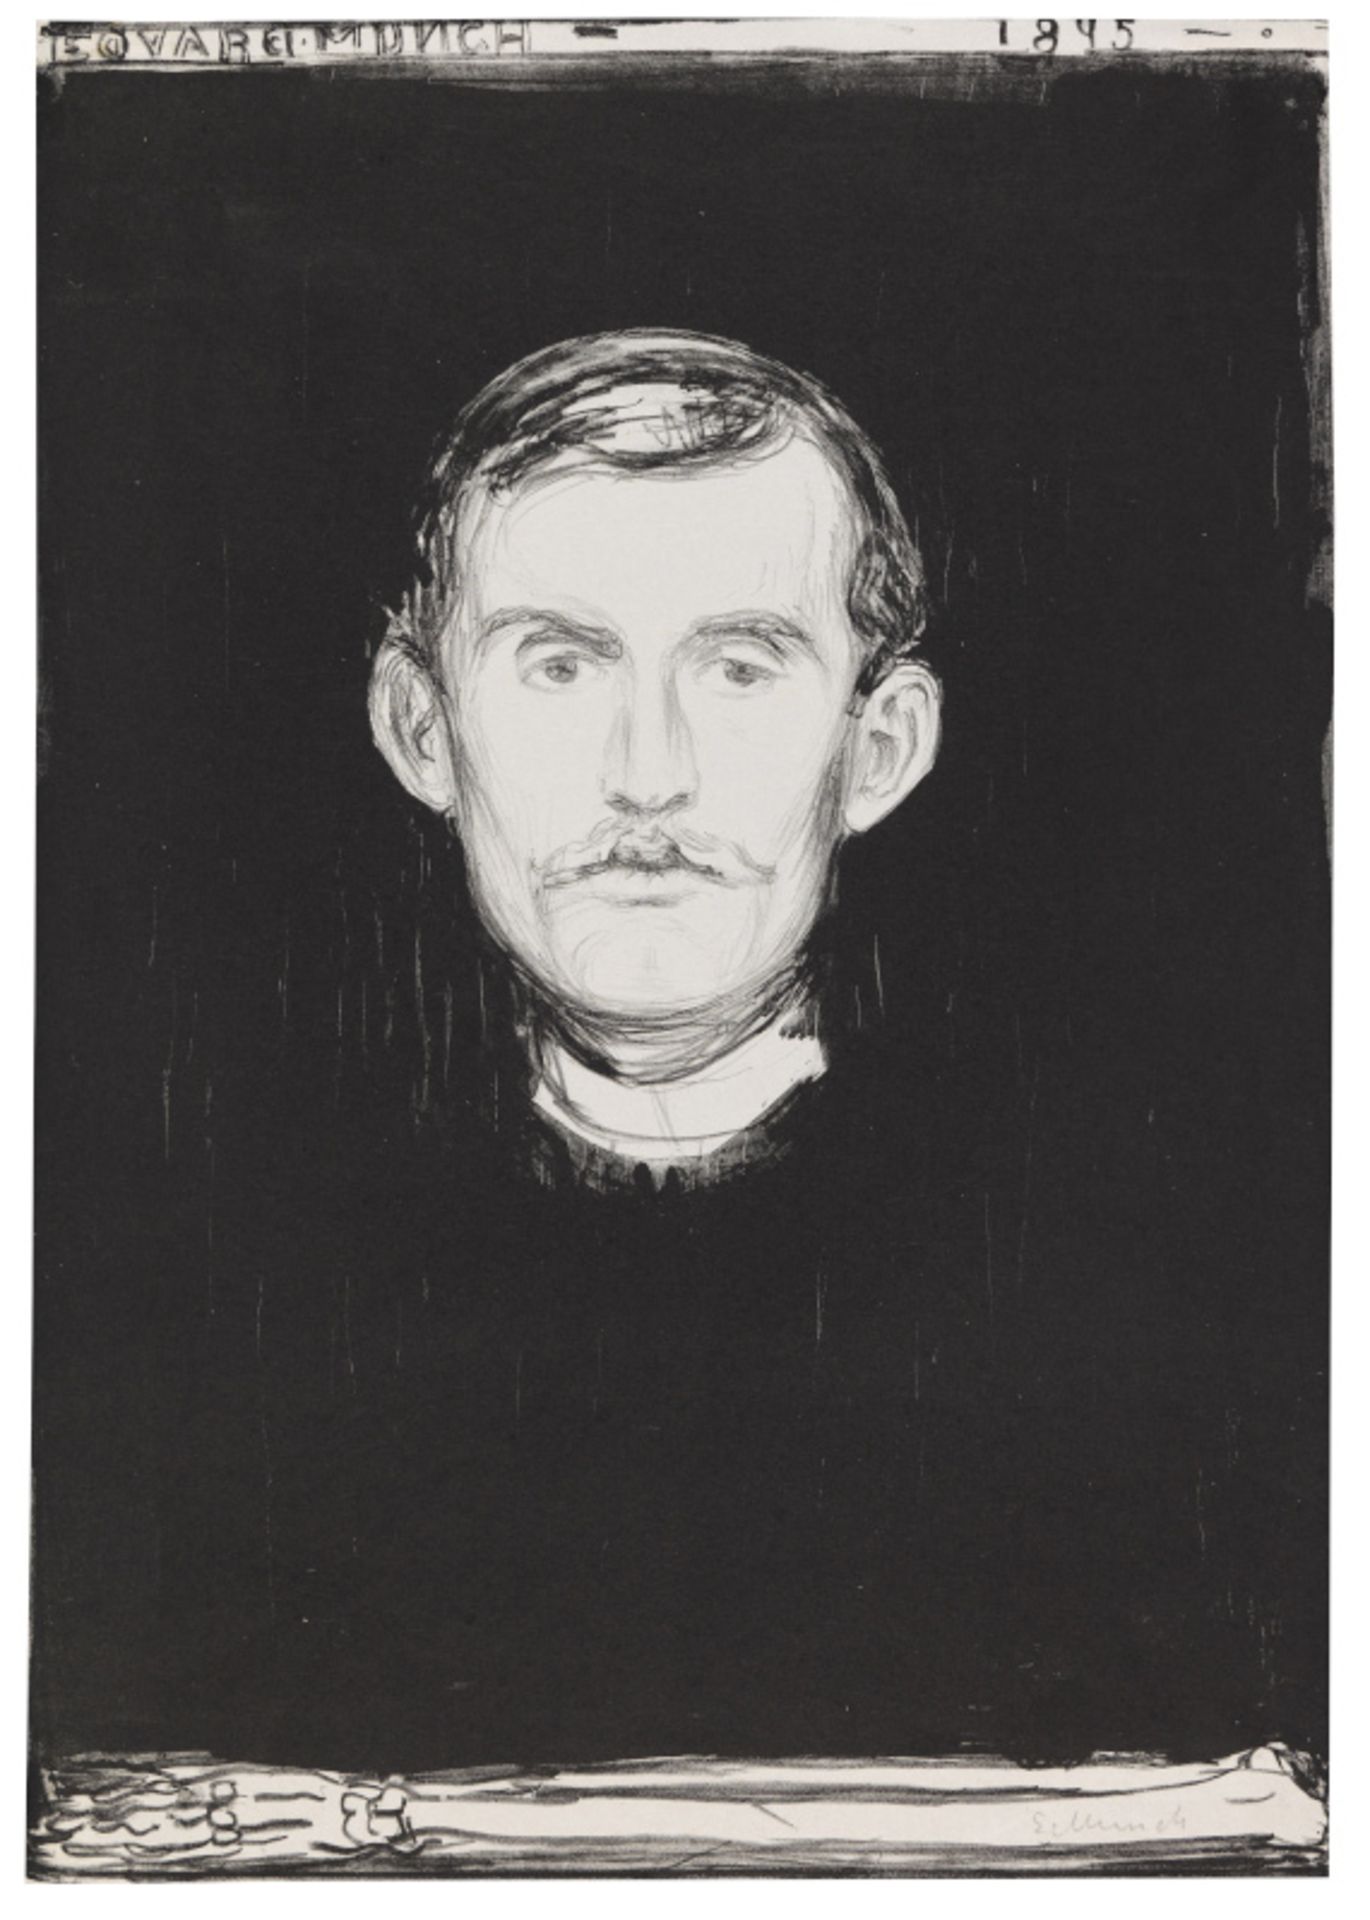 Edvard Munch 1863 Loyten - 1944 Ekely bei Oslo Selbstporträt. 1895. Lithografie. Woll 37 II (von